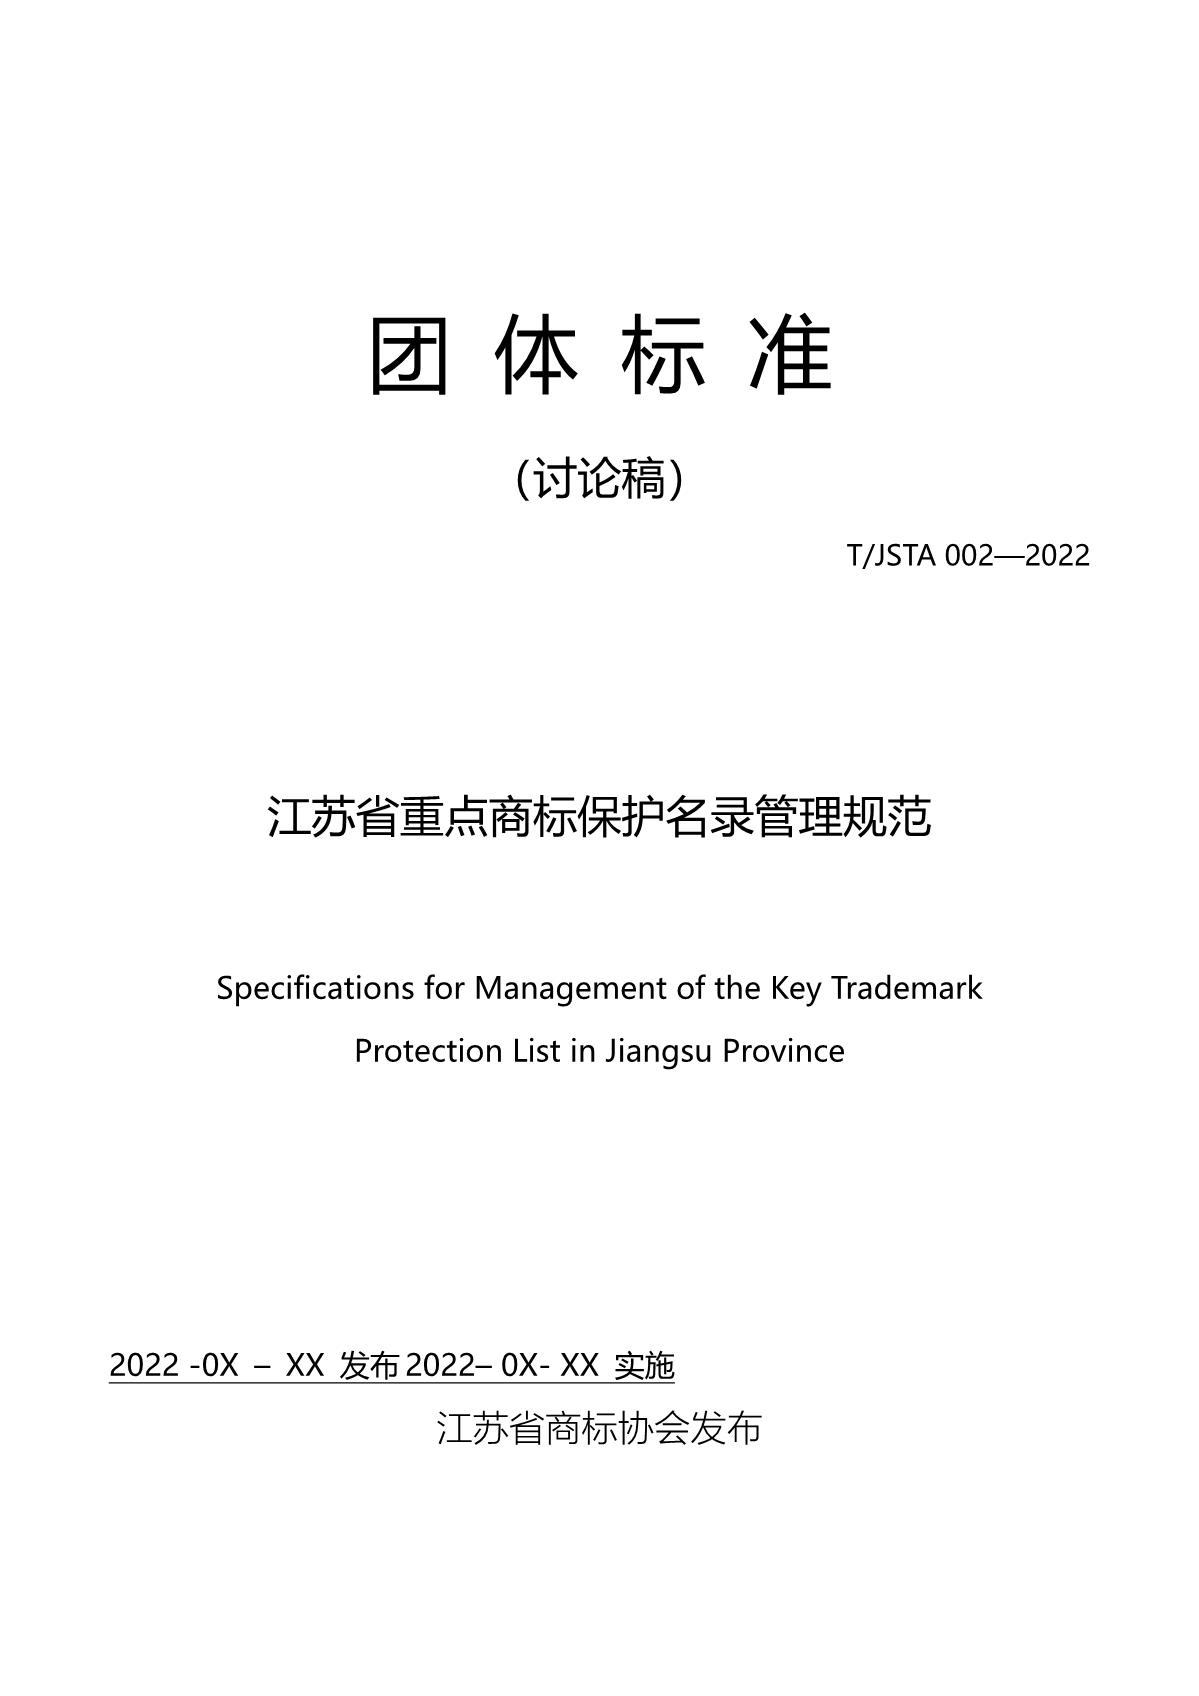 江苏省重点商标保护名录管理规范（征求意见稿）_1.JPG